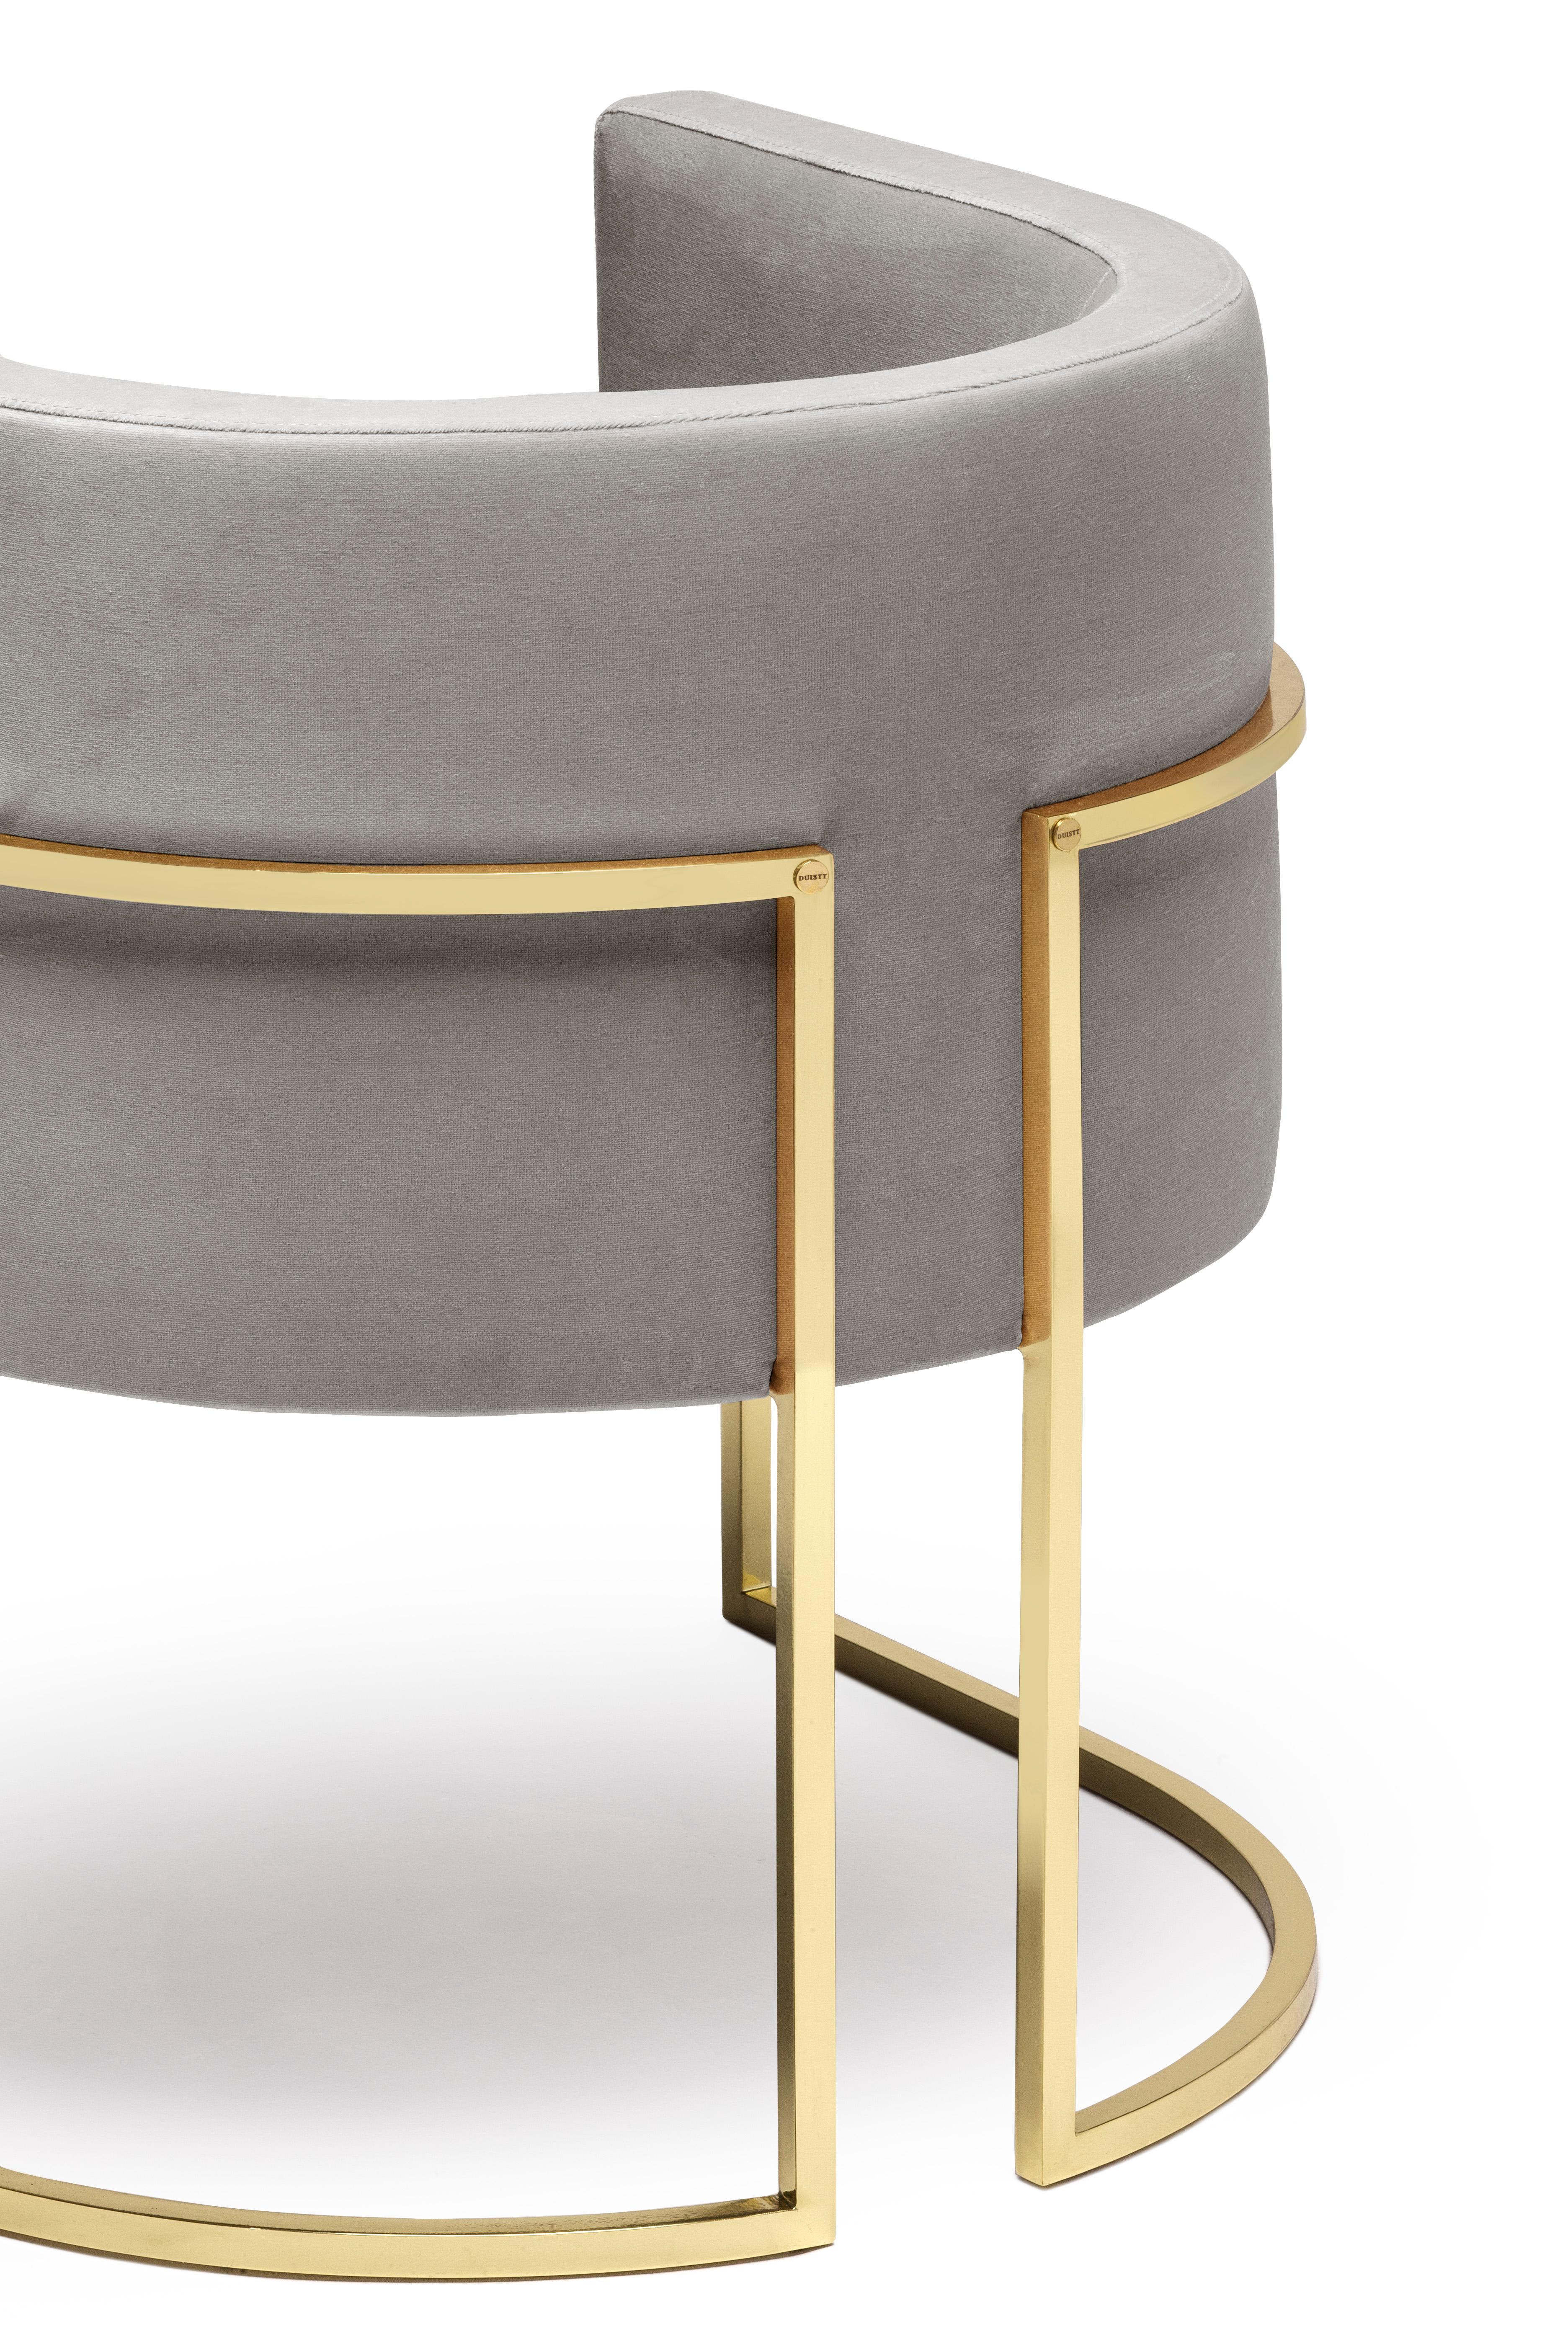 Chaise Julius, en laiton poli, fabriquée à la main au Portugal par Duistt.

La chaise JULIUS est une pièce de luxe intemporelle et discrète, construite avec des matériaux nobles tels que le laiton poli et le velours de coton. Au-delà du fait, qu'il